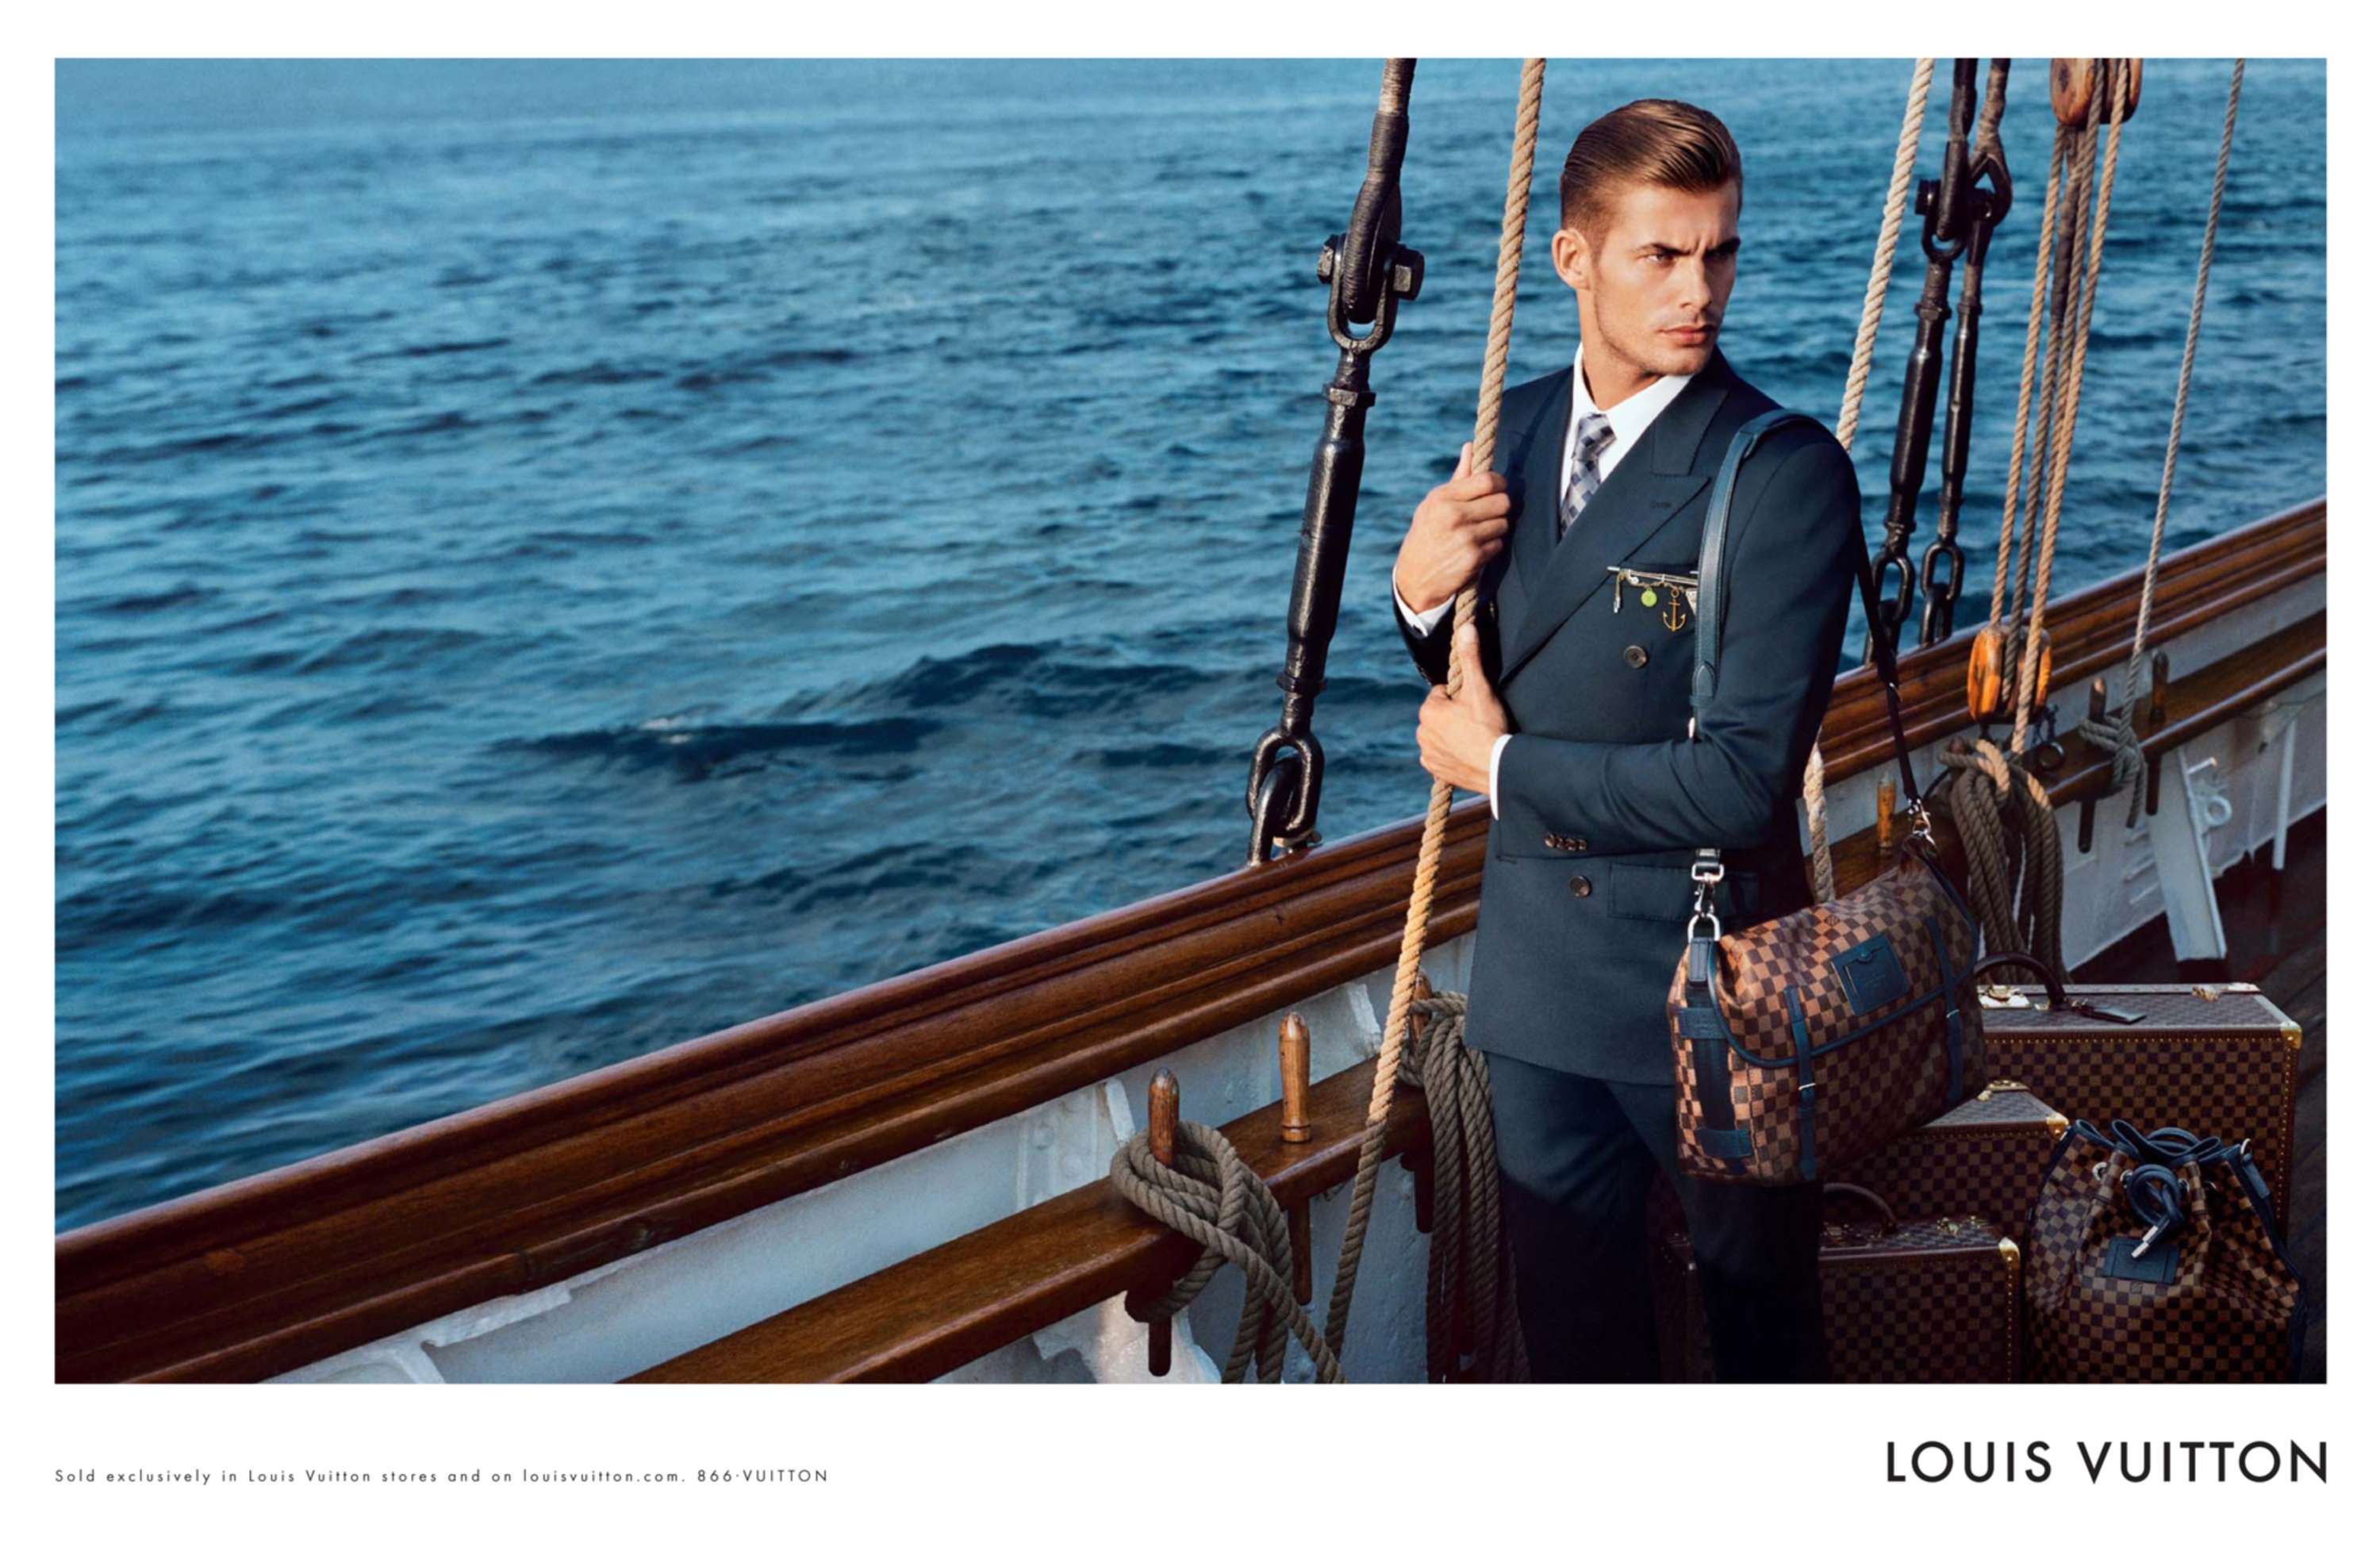 Louis Vuitton – Men's A/W 2012 campaign